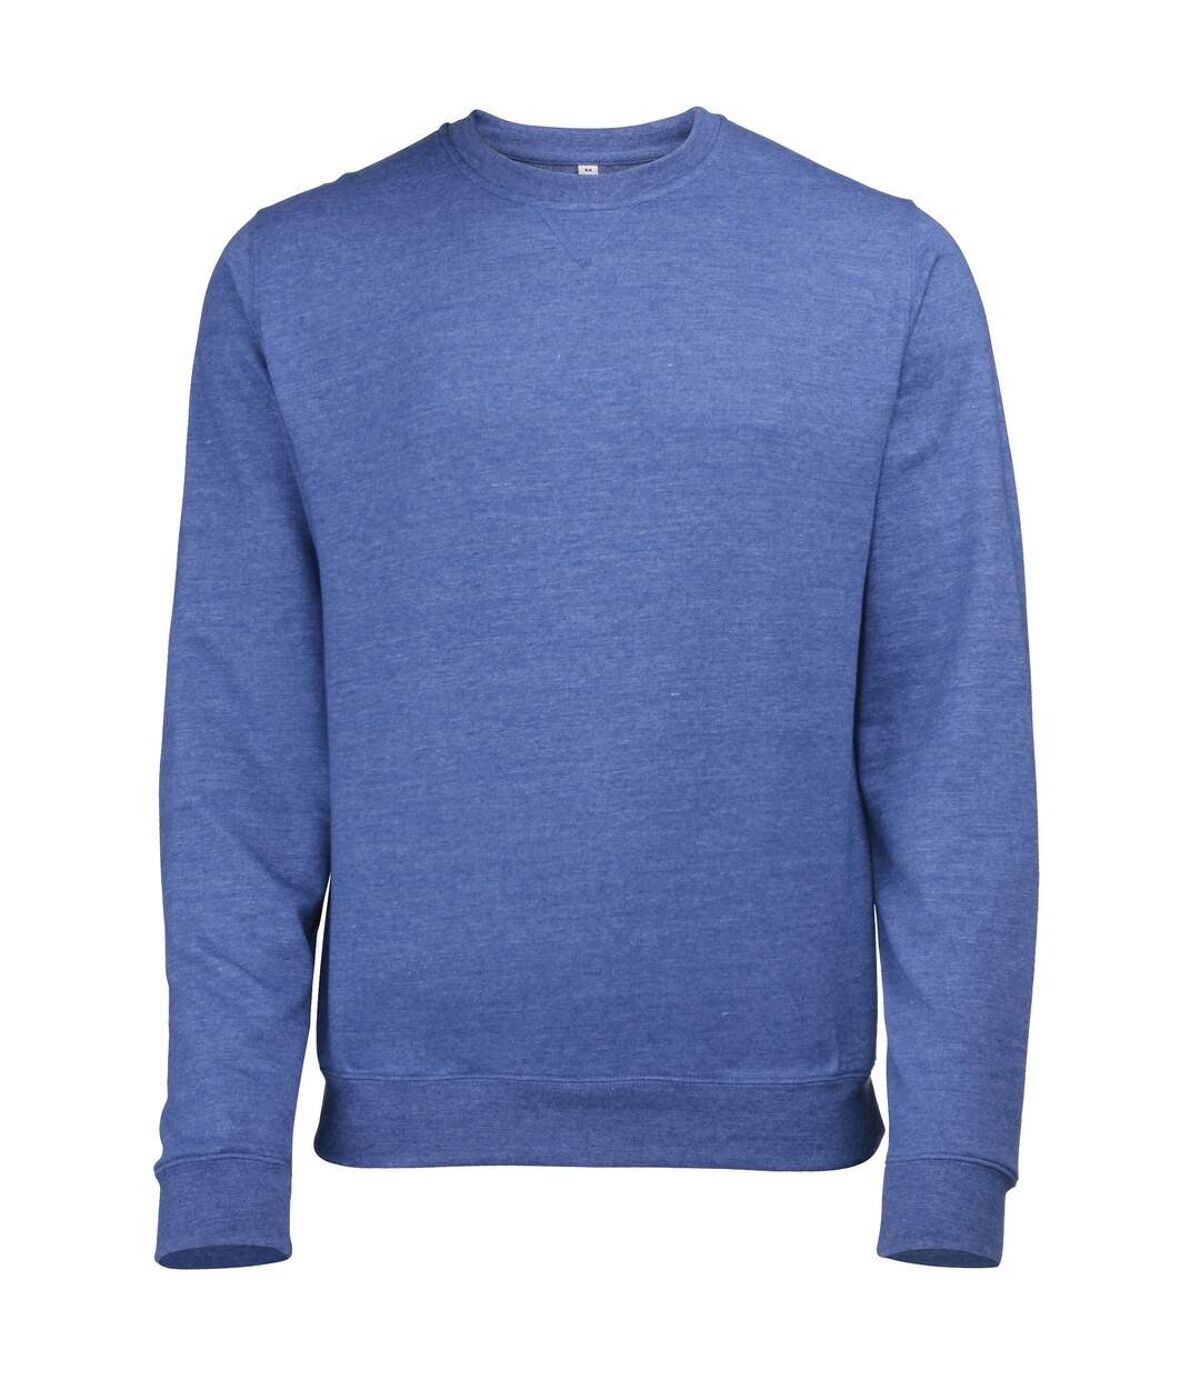 Awdis - Sweatshirt - Homme (Bleu roi chiné) - UTRW173